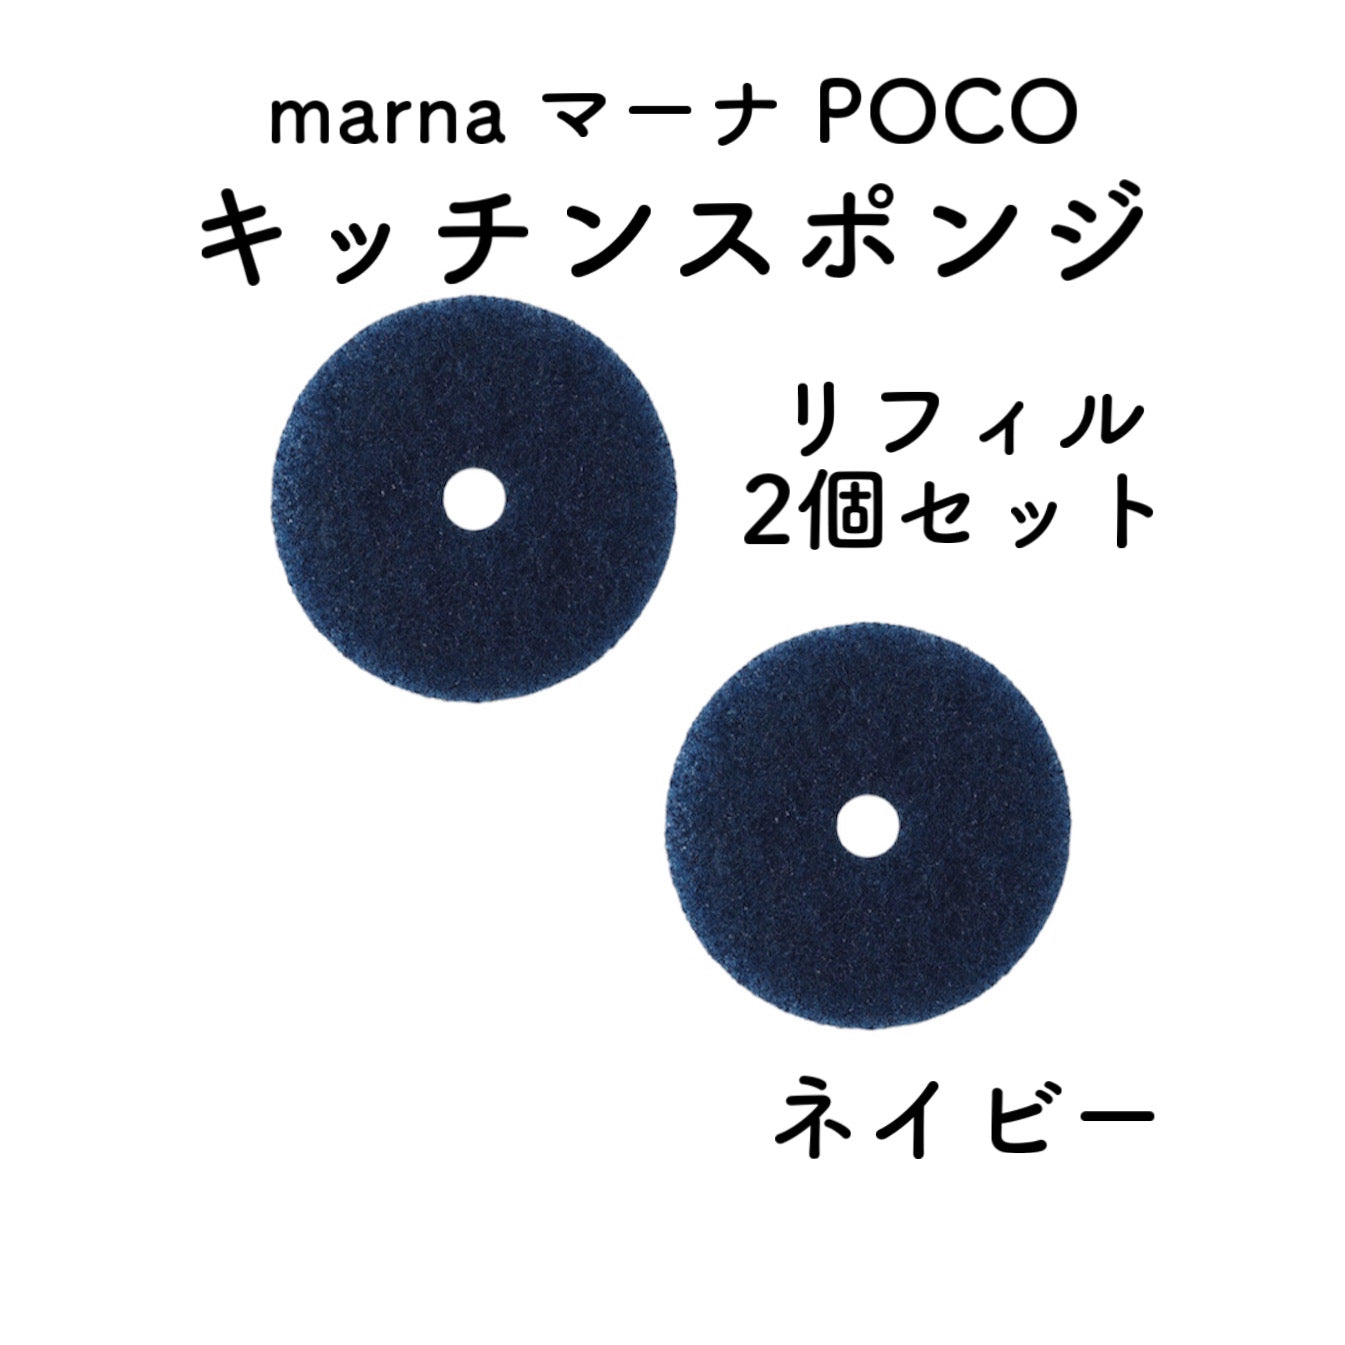 【2個セット】marna マーナ POCOキッチンスポンジ リフィル2個セット ネイビー 吸盤なし 食器洗い 浮かせる収納 台所用品